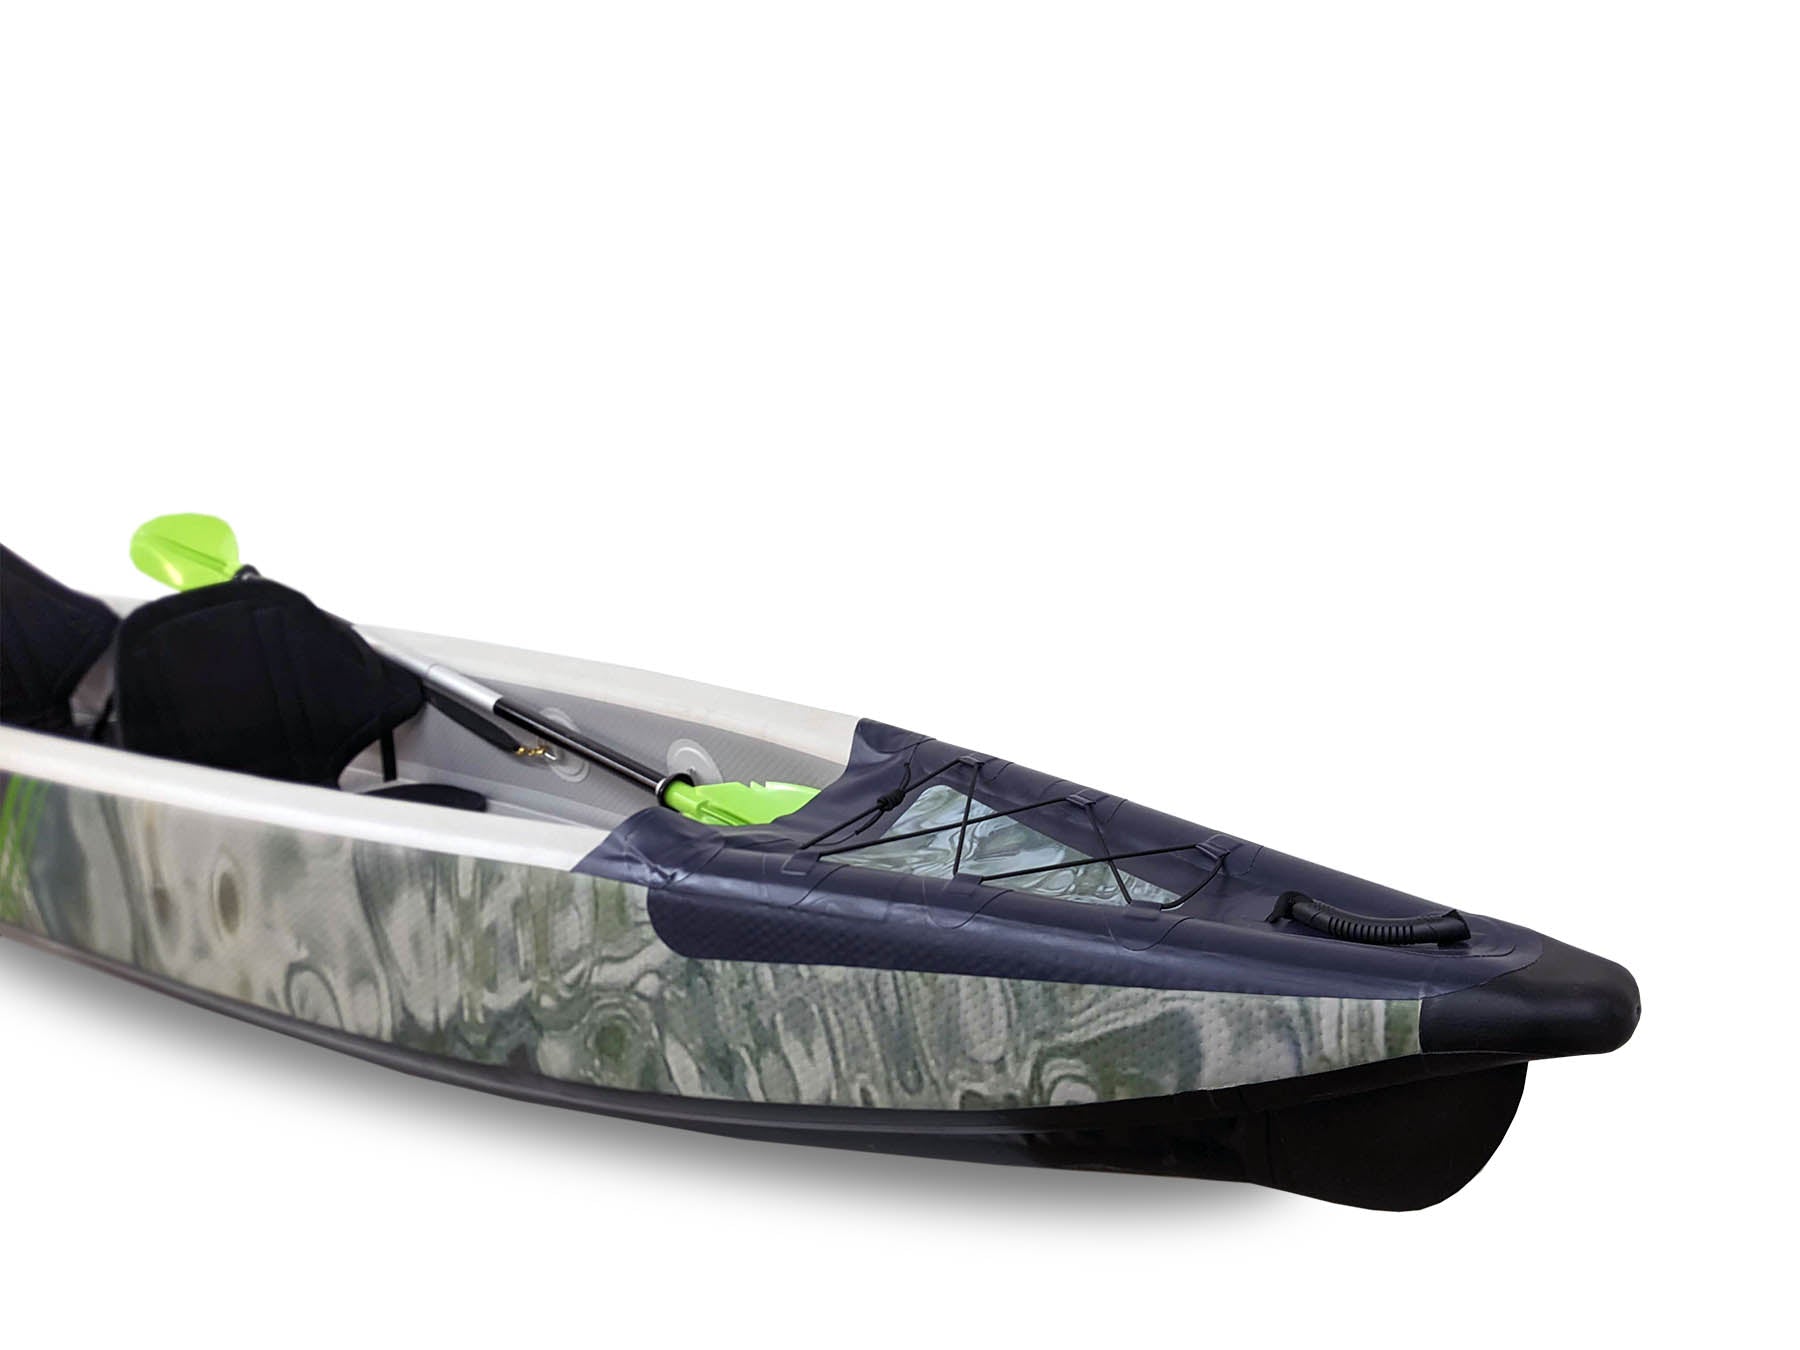 Duo - Inflatable Tandem Kayak